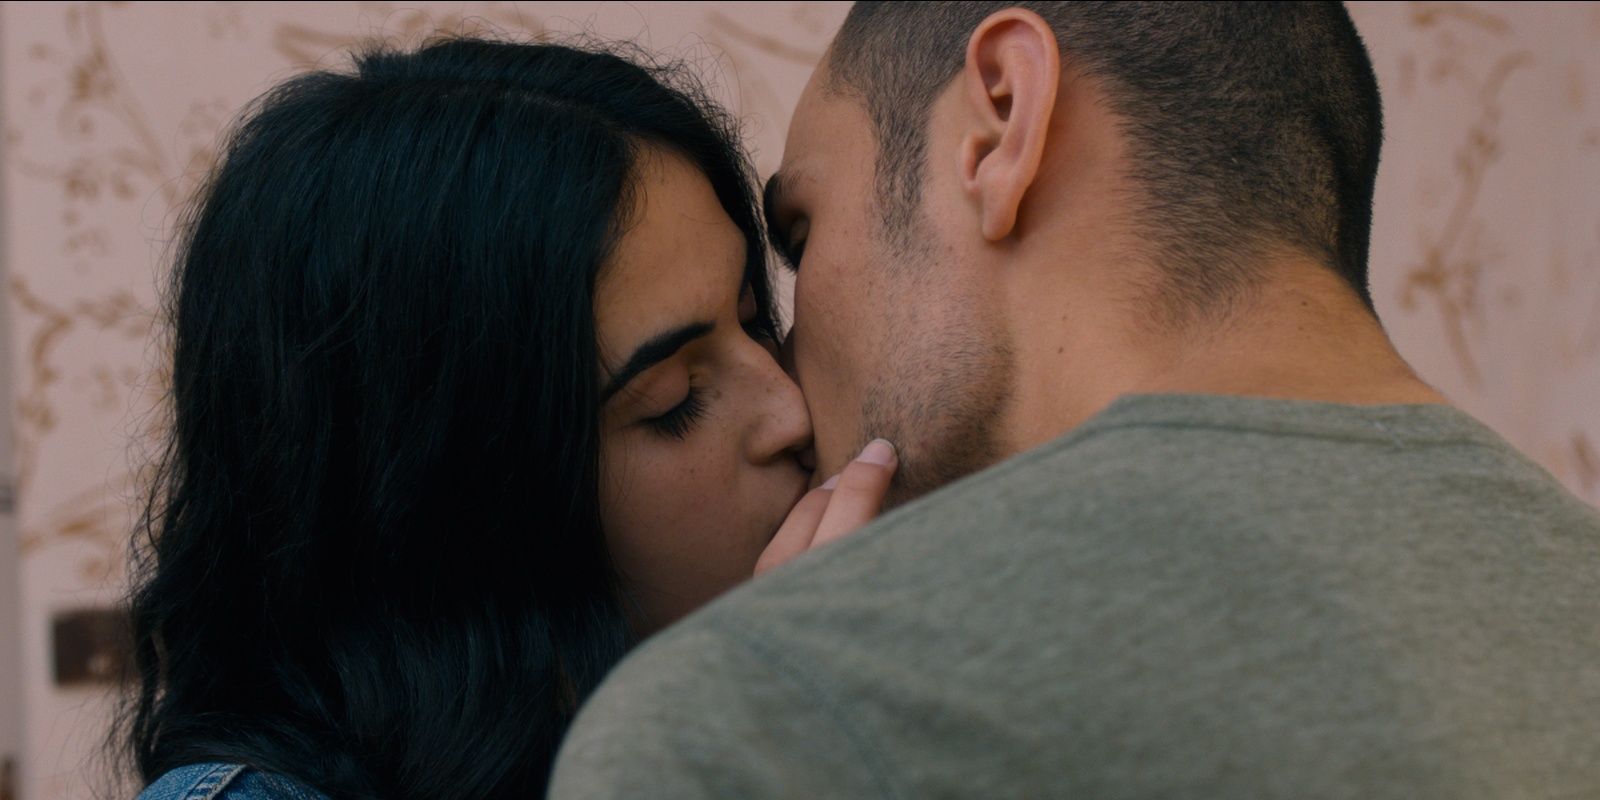 Kissing scene from Omar